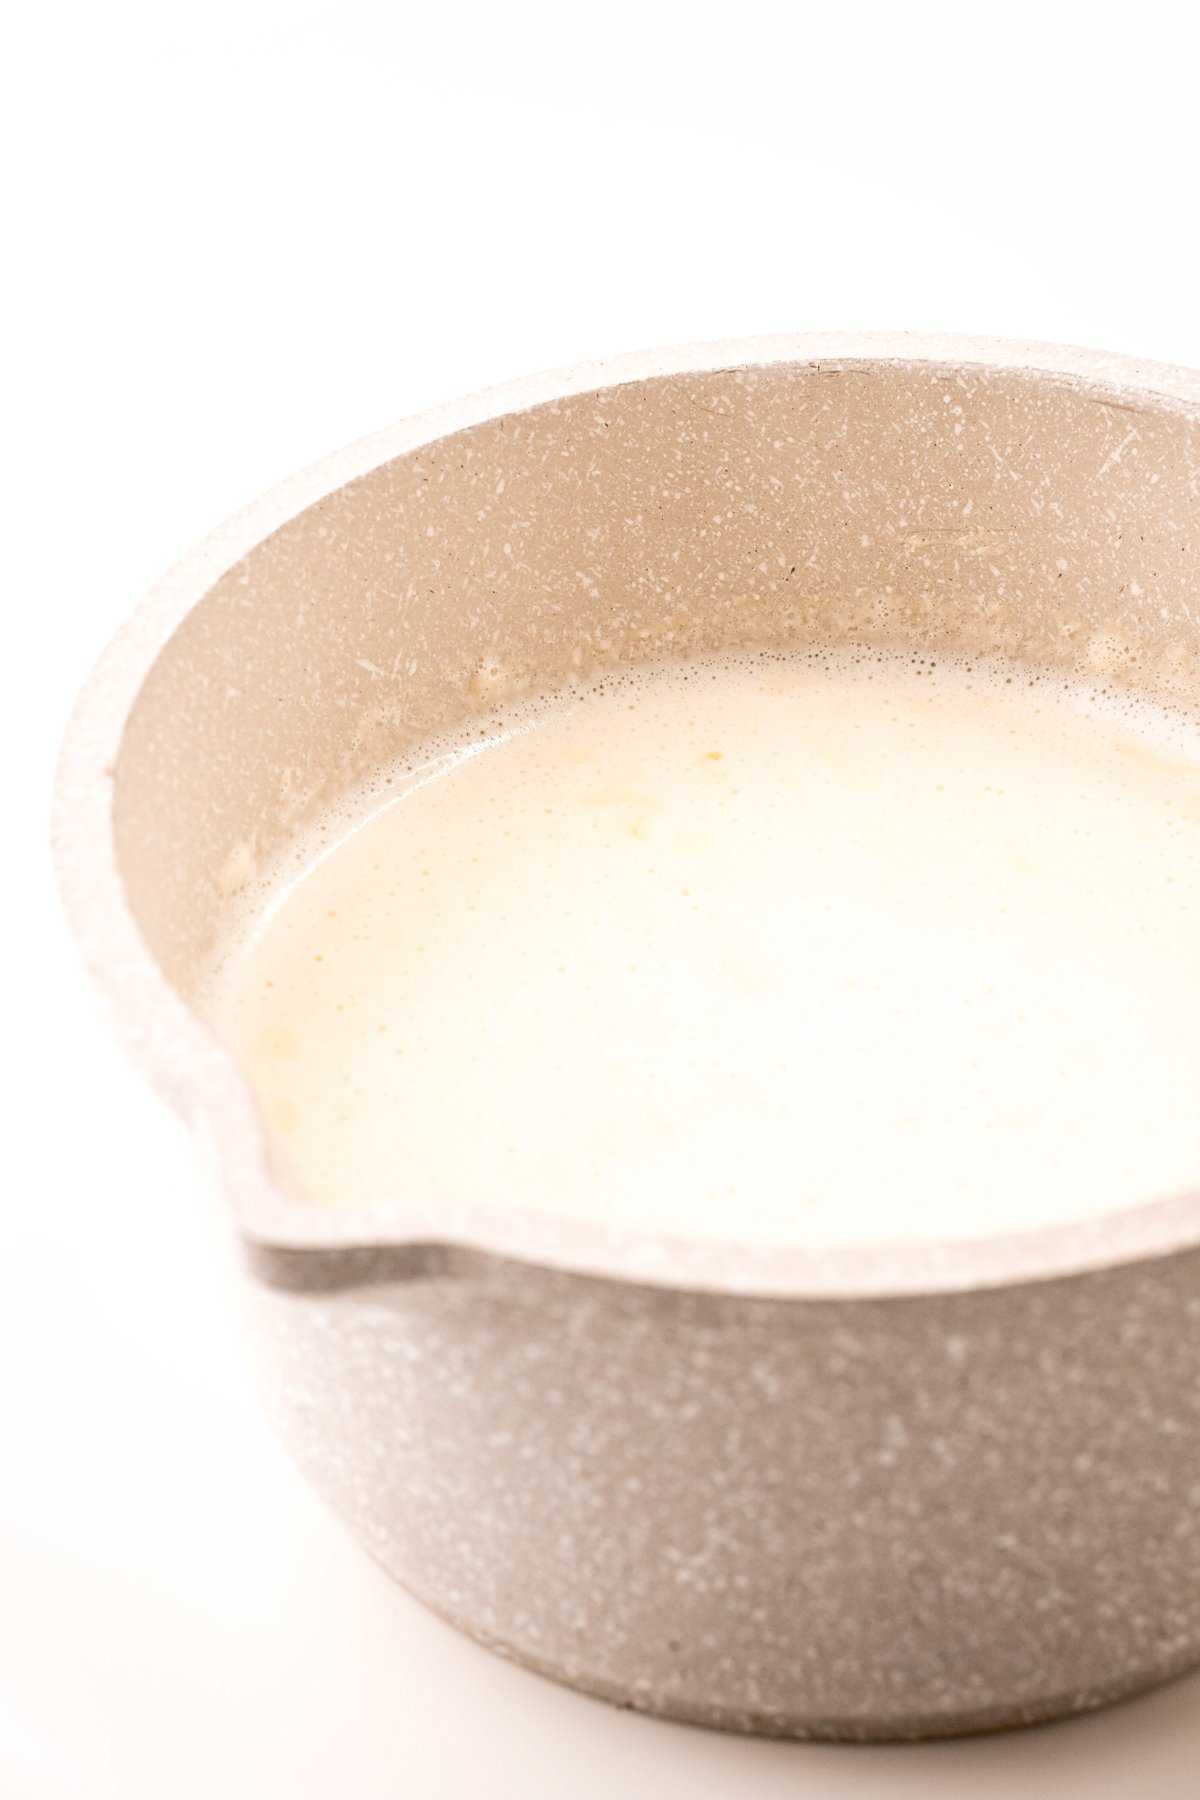 ceramic pot with warm milk